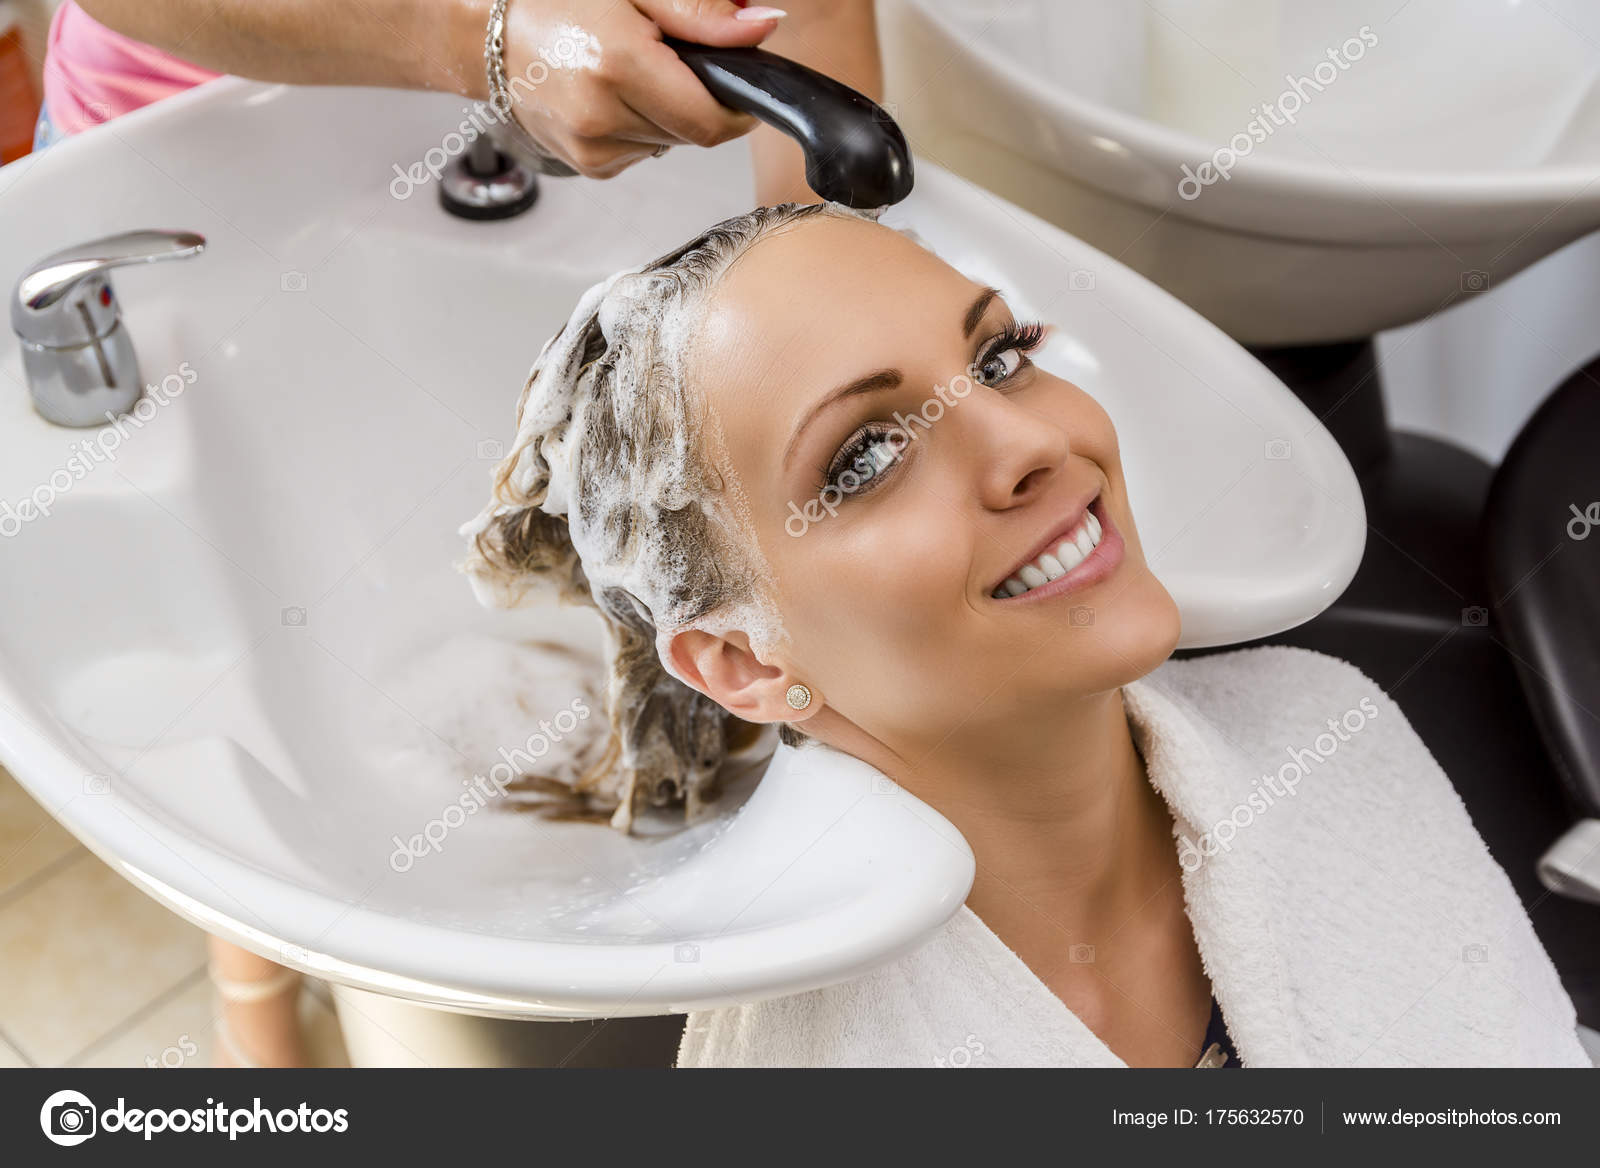 Salon Hair Washing Telegraph